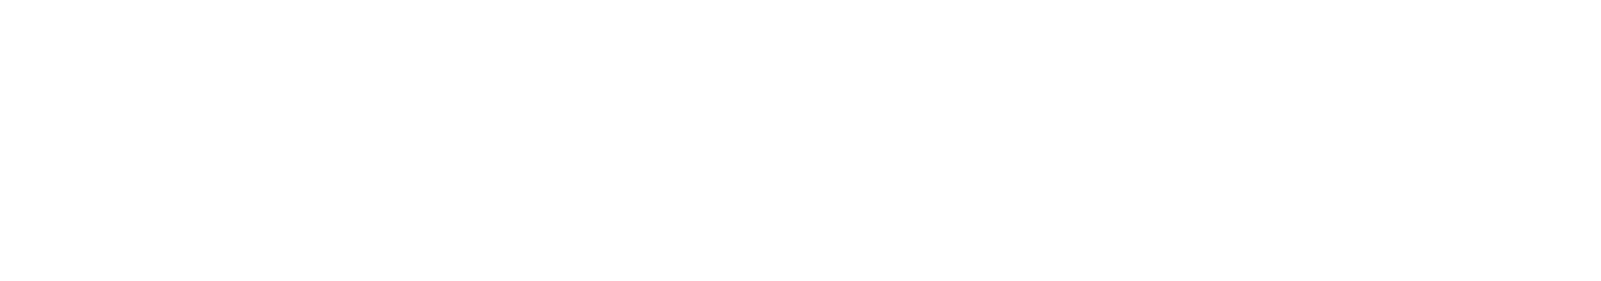 NAB-Show-Centennial-Logo